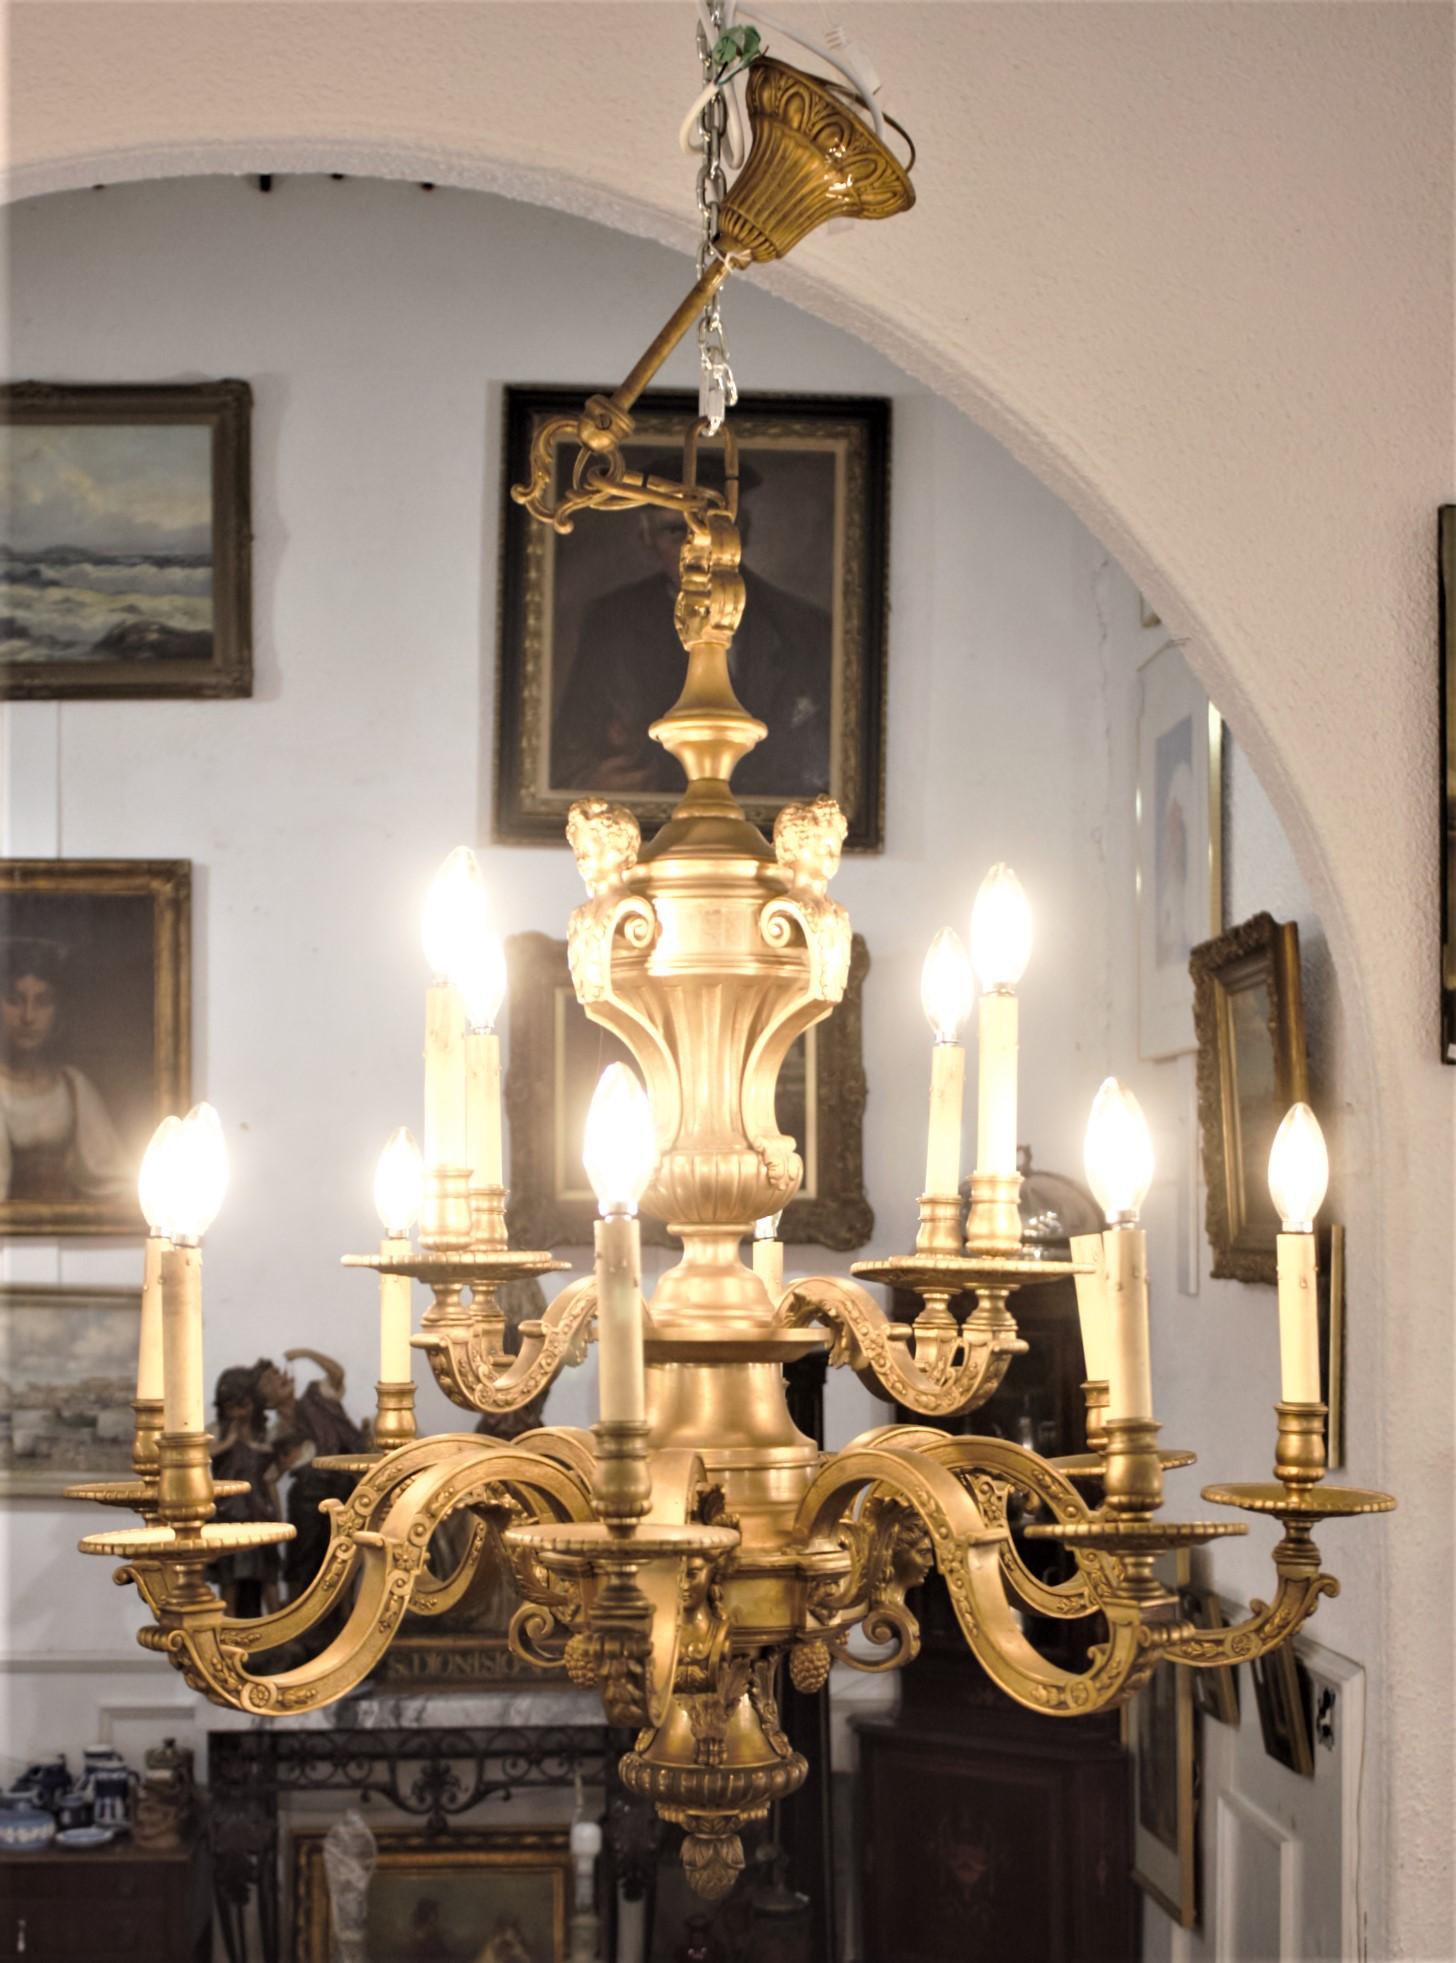 Dieser sehr große und massive zwölfarmige Kronleuchter aus gegossener und vergoldeter Bronze wurde um 1900 in Frankreich im Louis-XIV-Stil hergestellt. Der Kronleuchter ist kunstvoll mit einer Reihe von figuralen Köpfen auf der Spitze gegossen, die